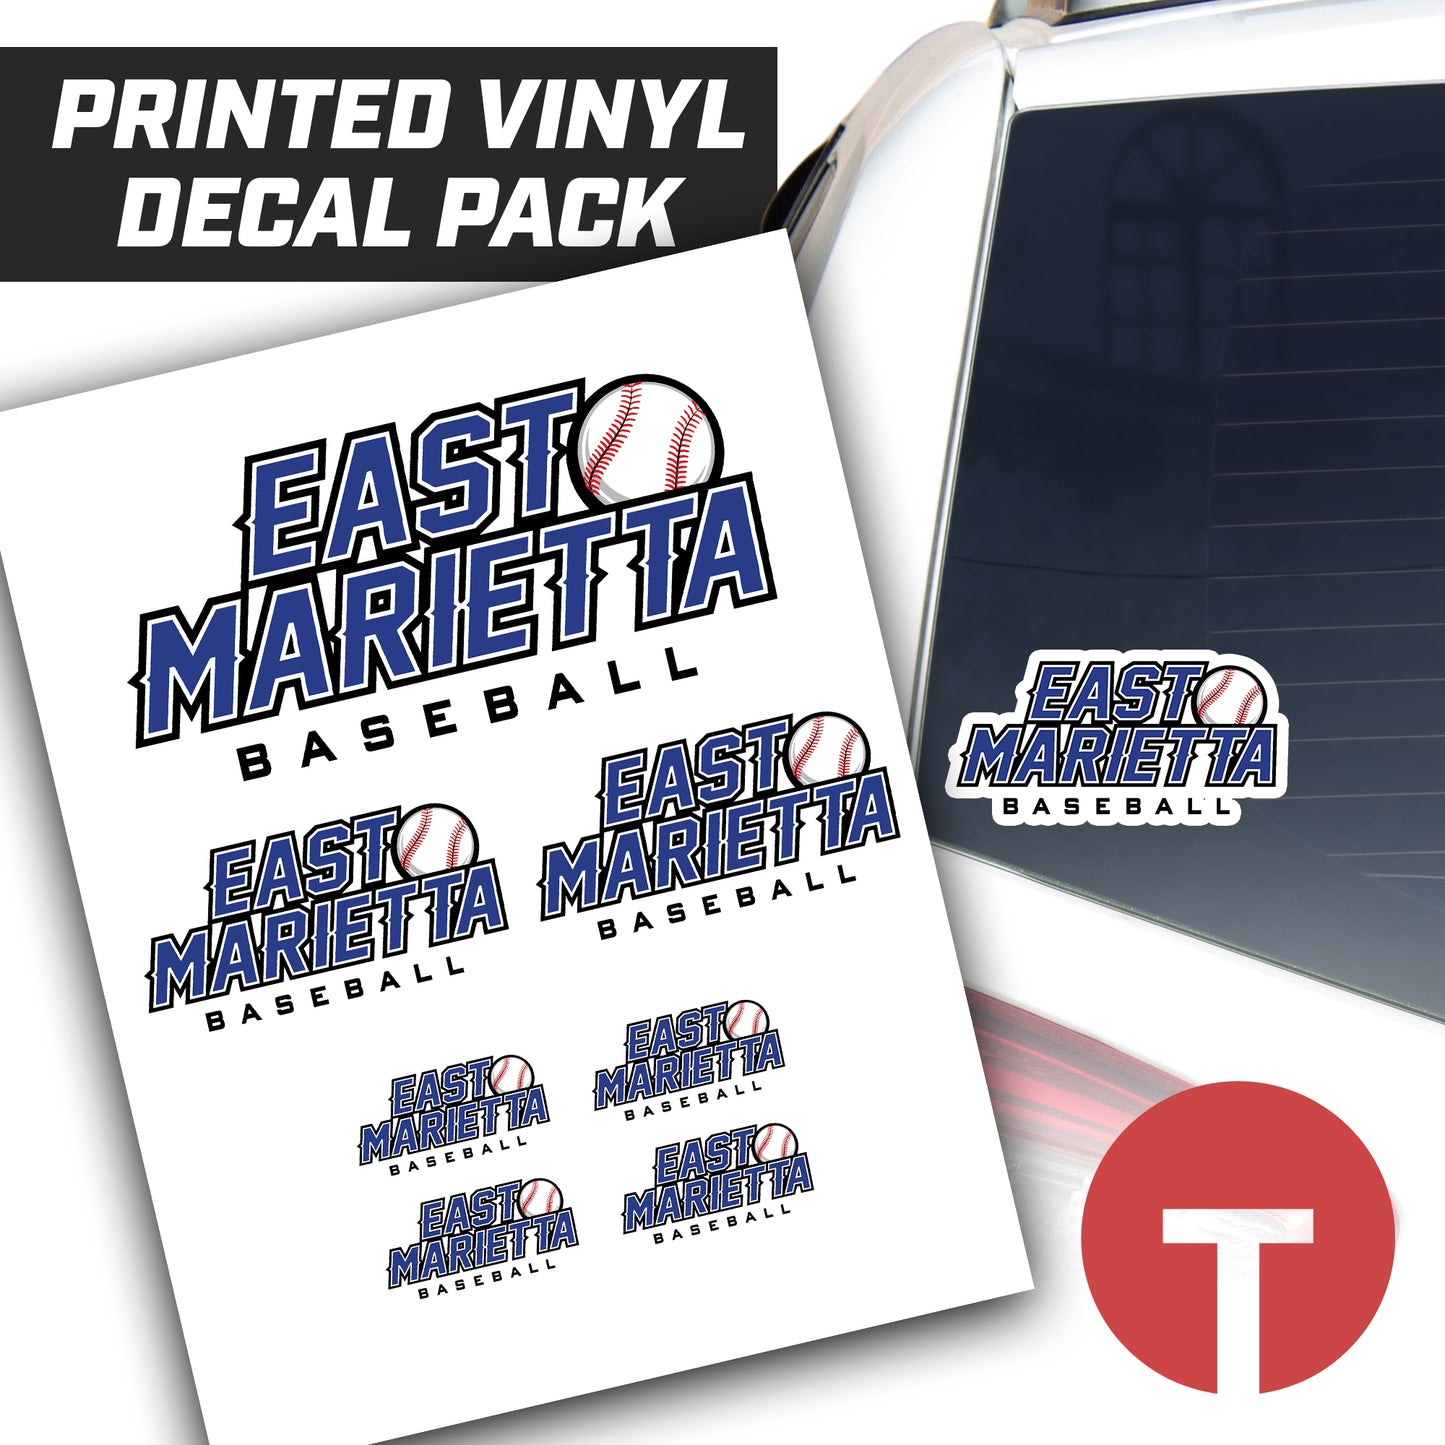 East Marietta Little League - Logo Vinyl Decal Pack